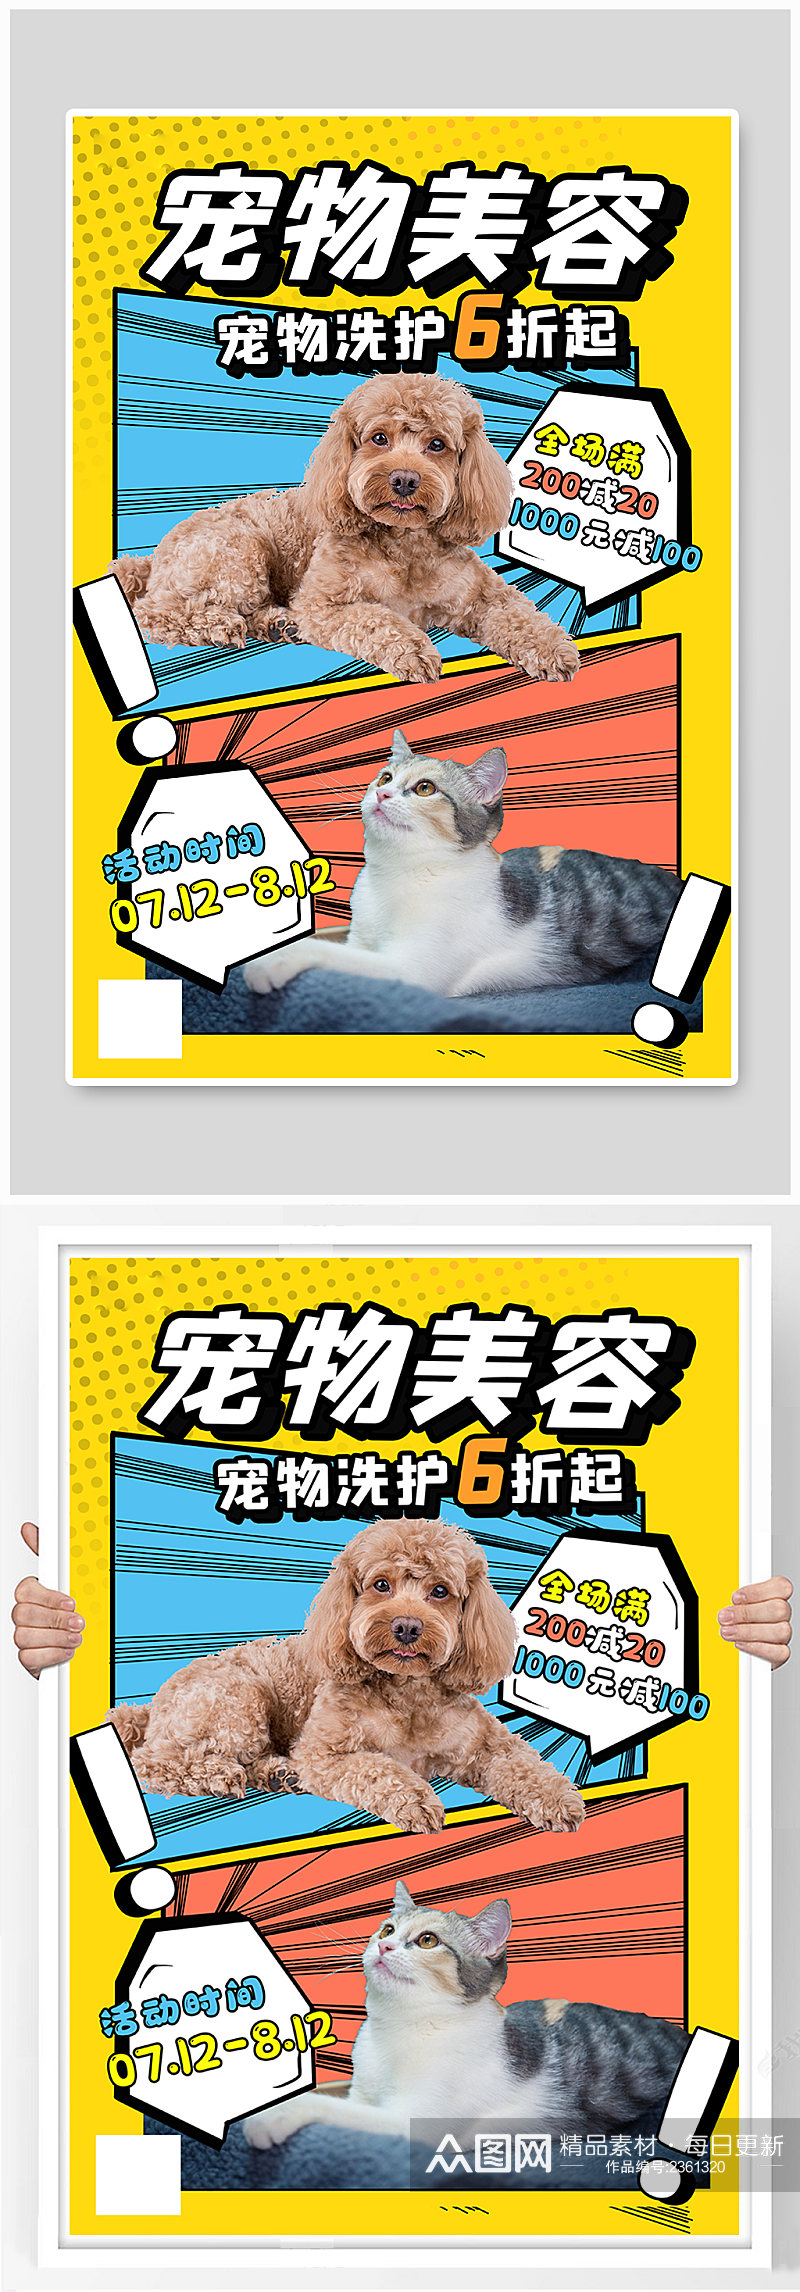 宠物美容宣传猫狗彩色波普风海报素材